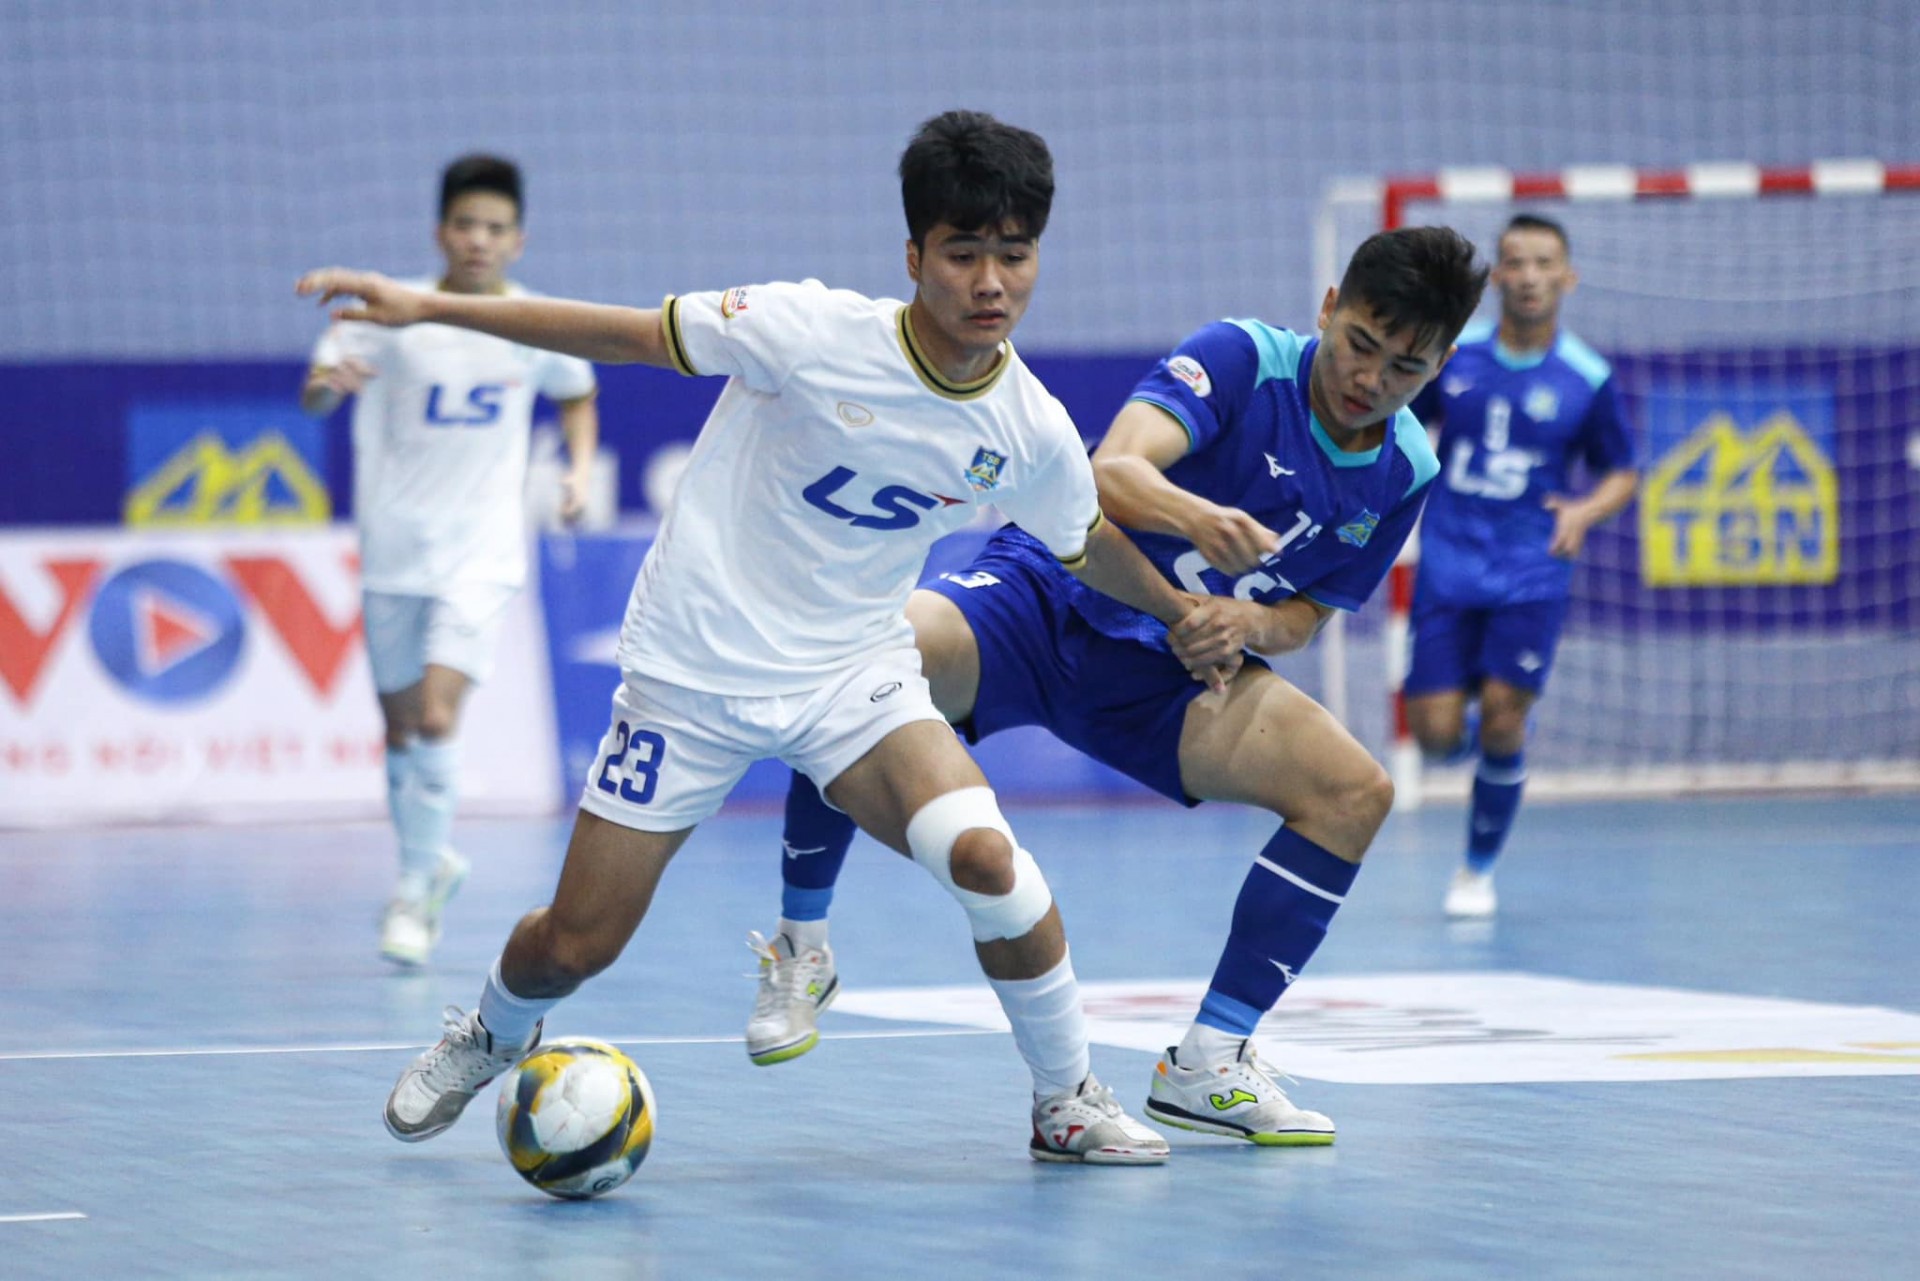 Vòng 4 Futsal HDBank VĐQG 2023: Thái Sơn Nam TP. HCM tạm chiếm ngôi đầu bảng